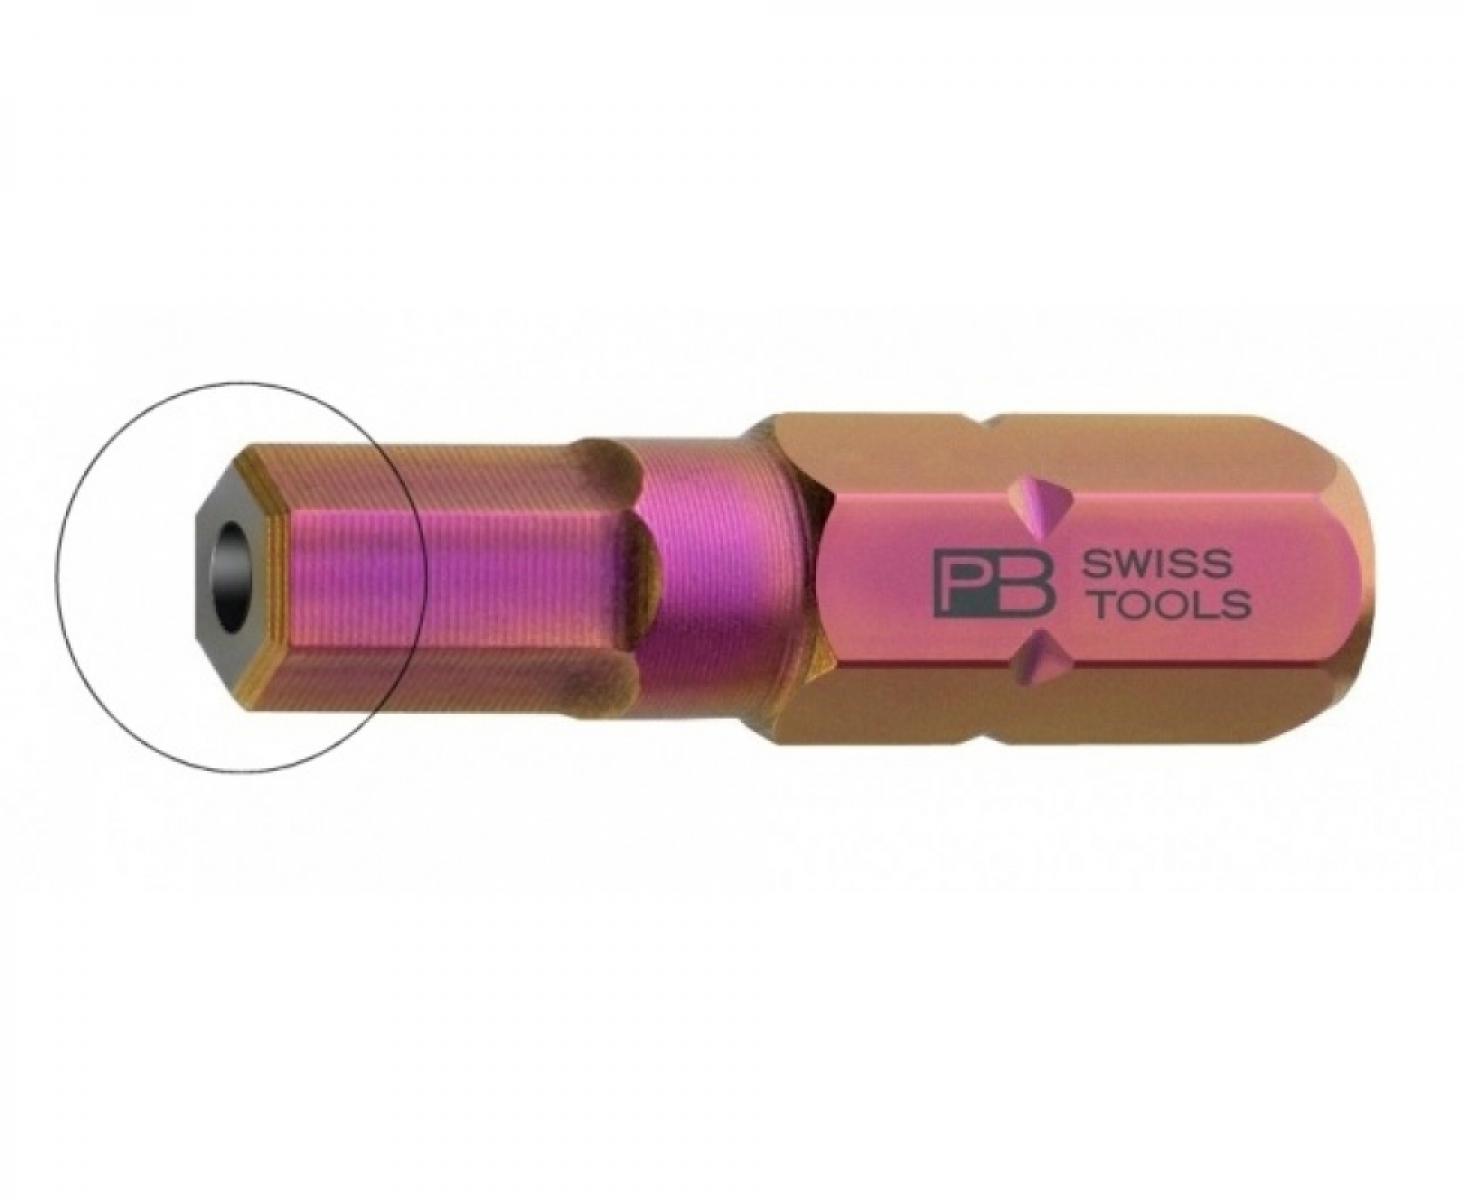 Бита HEX BO PrecisionBits C6,3 с внешним шестигранником 1/4 с отверстием PB Swiss Tools PB C6.210B/4 M4